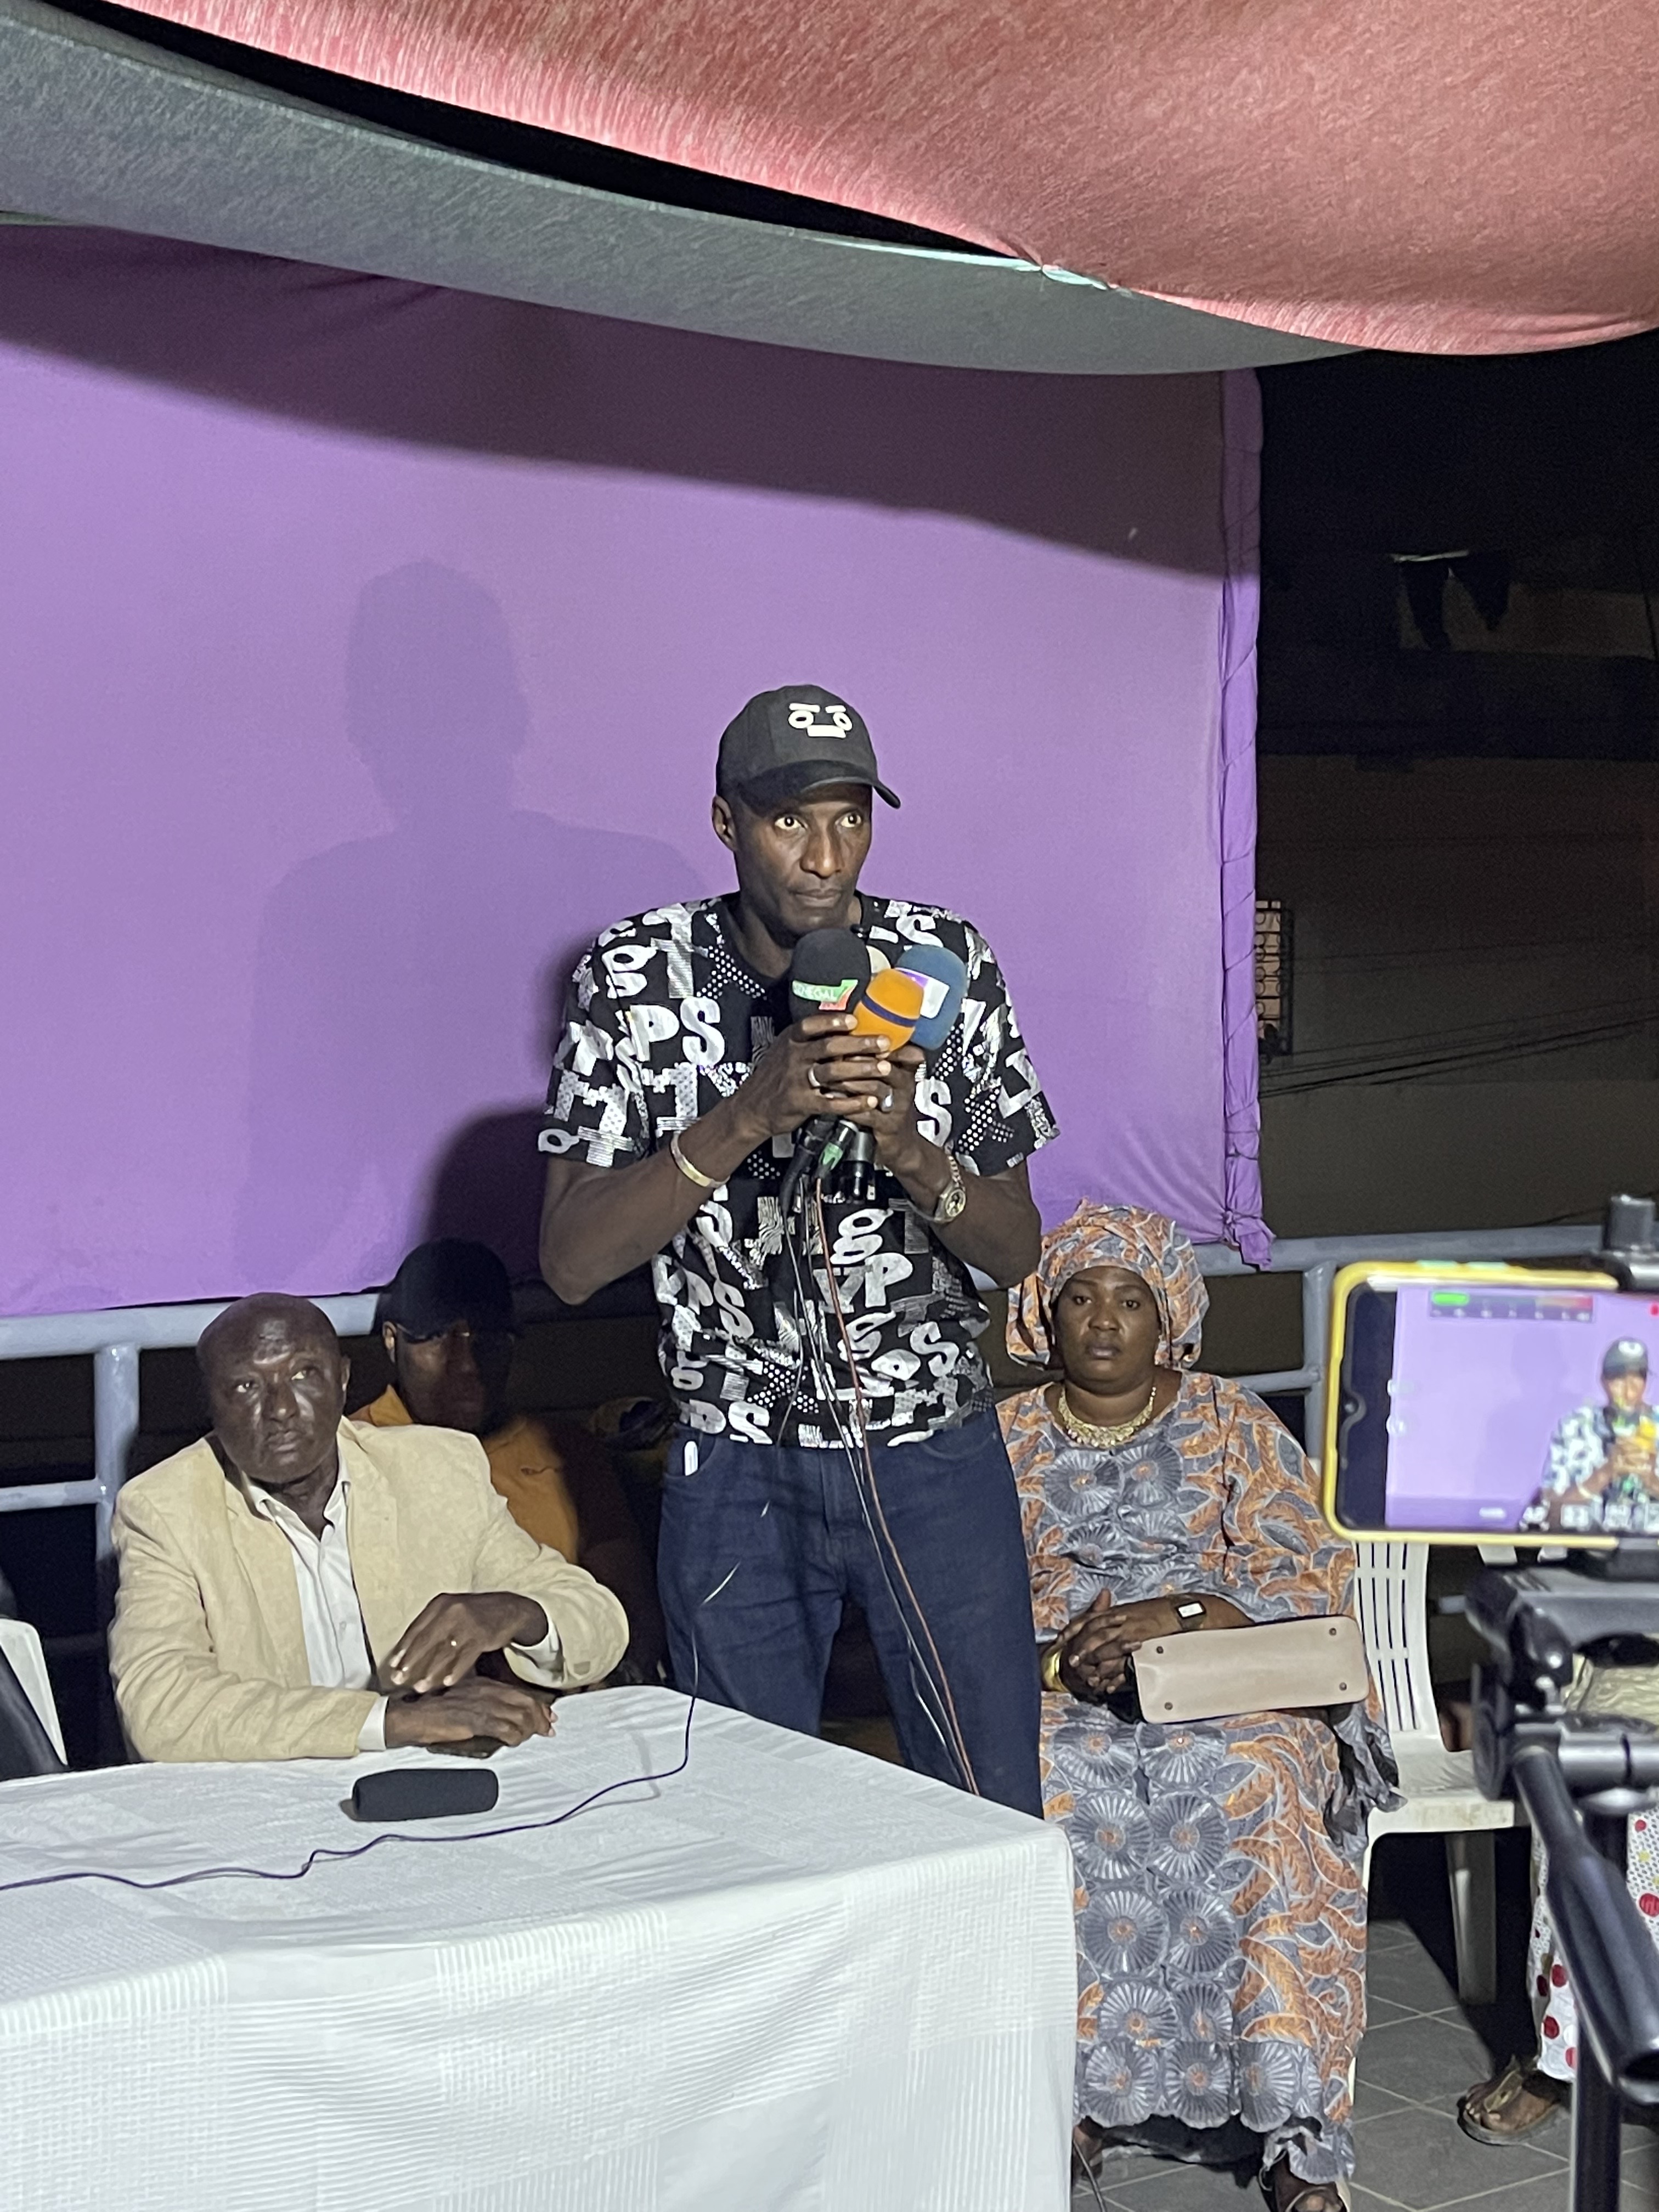 Choix de Jean Baptiste Diouf comme tête de liste à Grand-Dakar : Le maire sortant accusé de démarche solitaire par les partisans de Ndèye Saly Diop qui menacent de faire « un vote sanction »